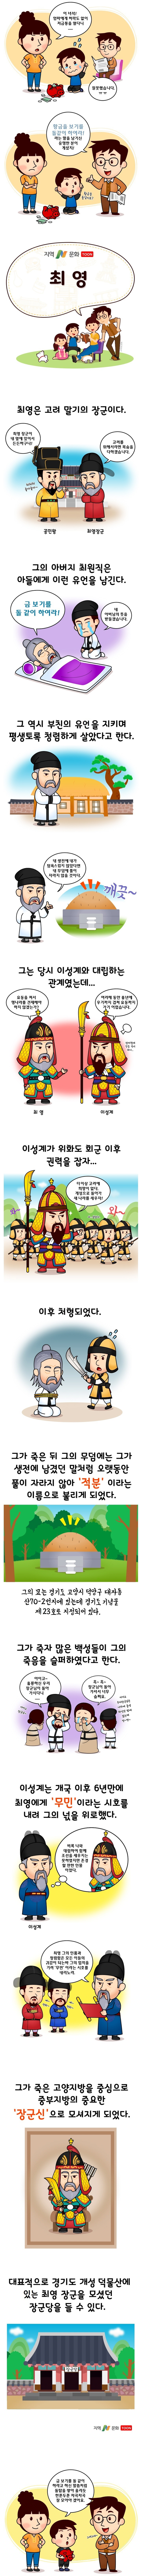 중부지방의 무속신앙에서 모시는 장군신 중의 하나로 ‘최일 장군’이라고도 부른다. 서울 굿에서는 ‘상산’이라고 하여 가장 중요한 신격으로 여긴다.